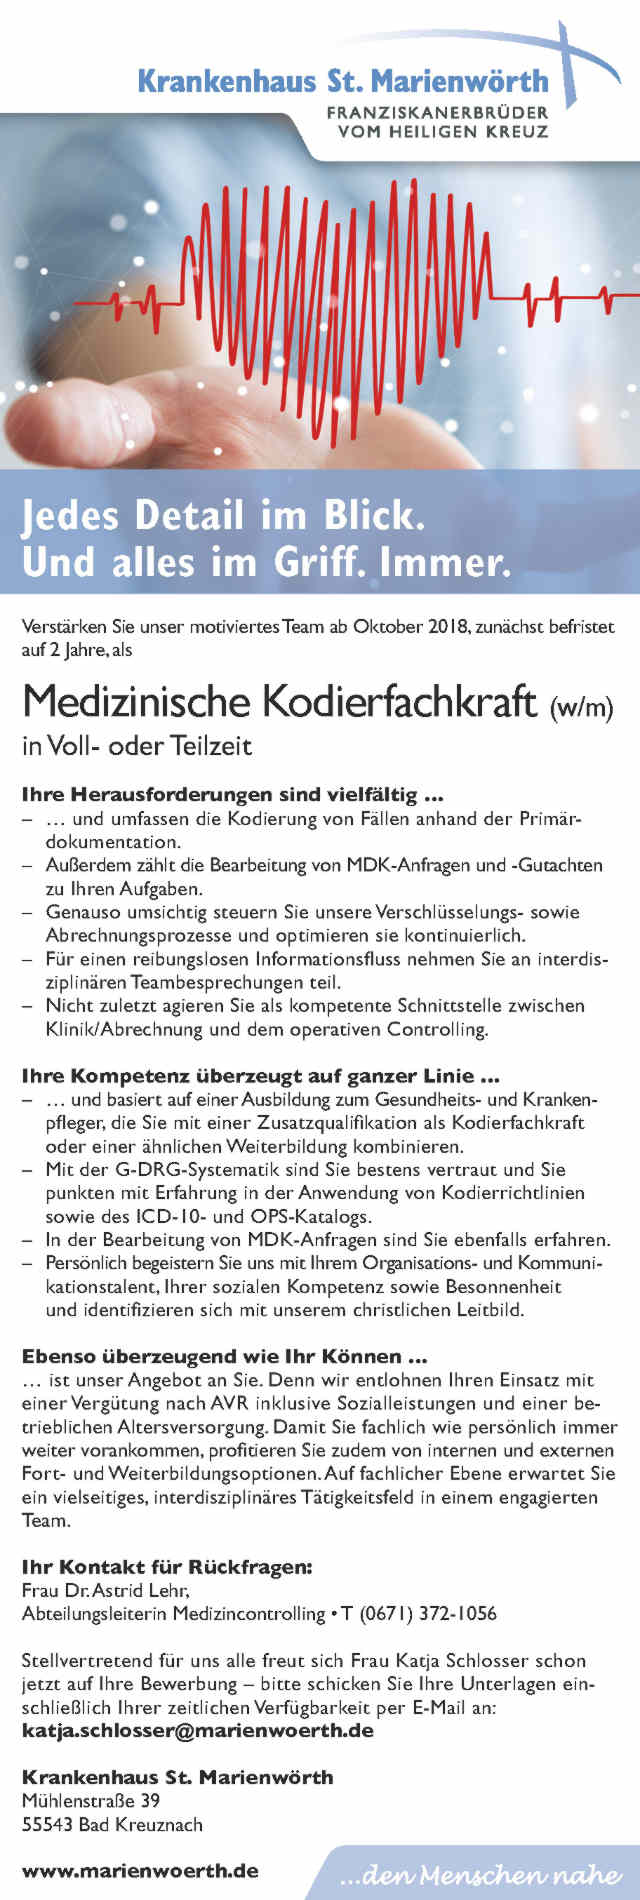 Krankenhaus St. Marienwörth, Bad Kreuznach: Medizinische Kodierfachkraft (w/m)